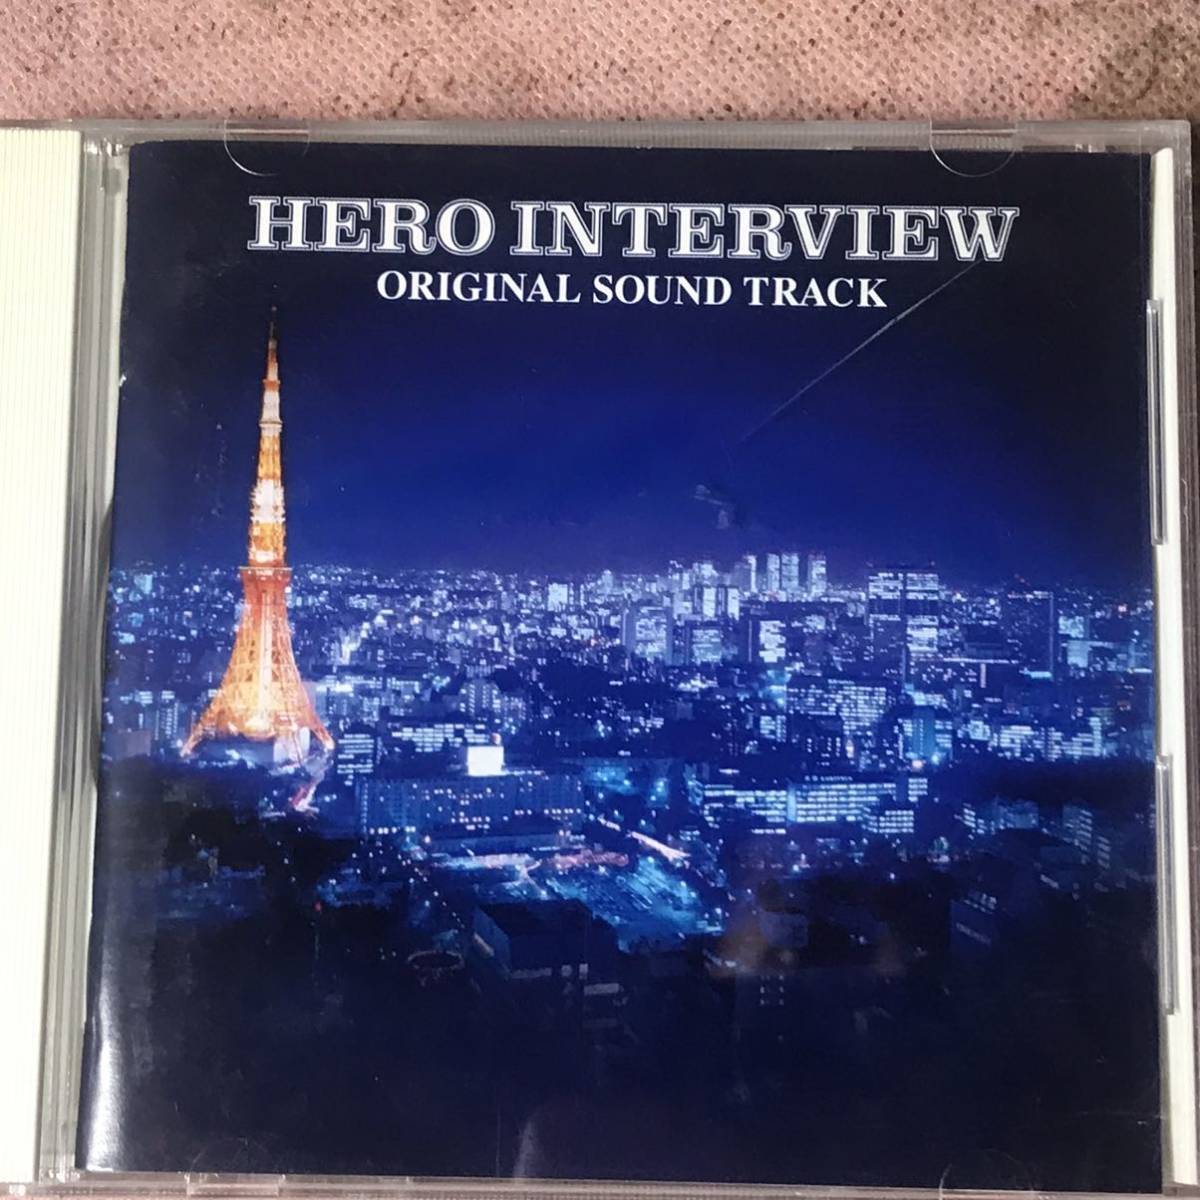 * hero inter view original soundtrack hf5